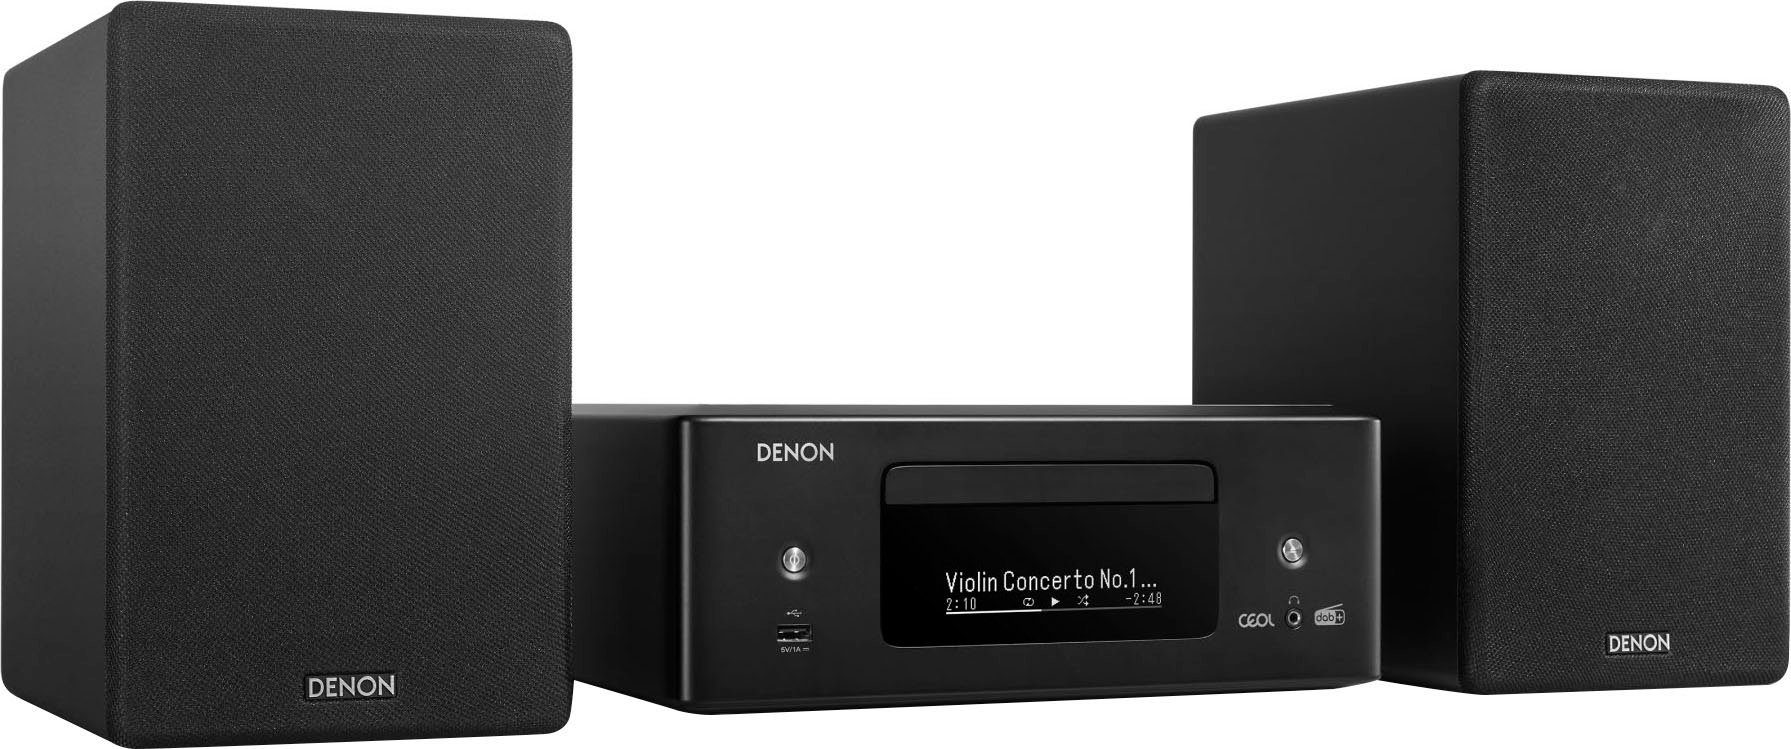 Denon CEOL N12DAB Stereoanlage (Digitalradio (DAB), FM-Tuner, UKW mit RDS, 130 W) schwarz